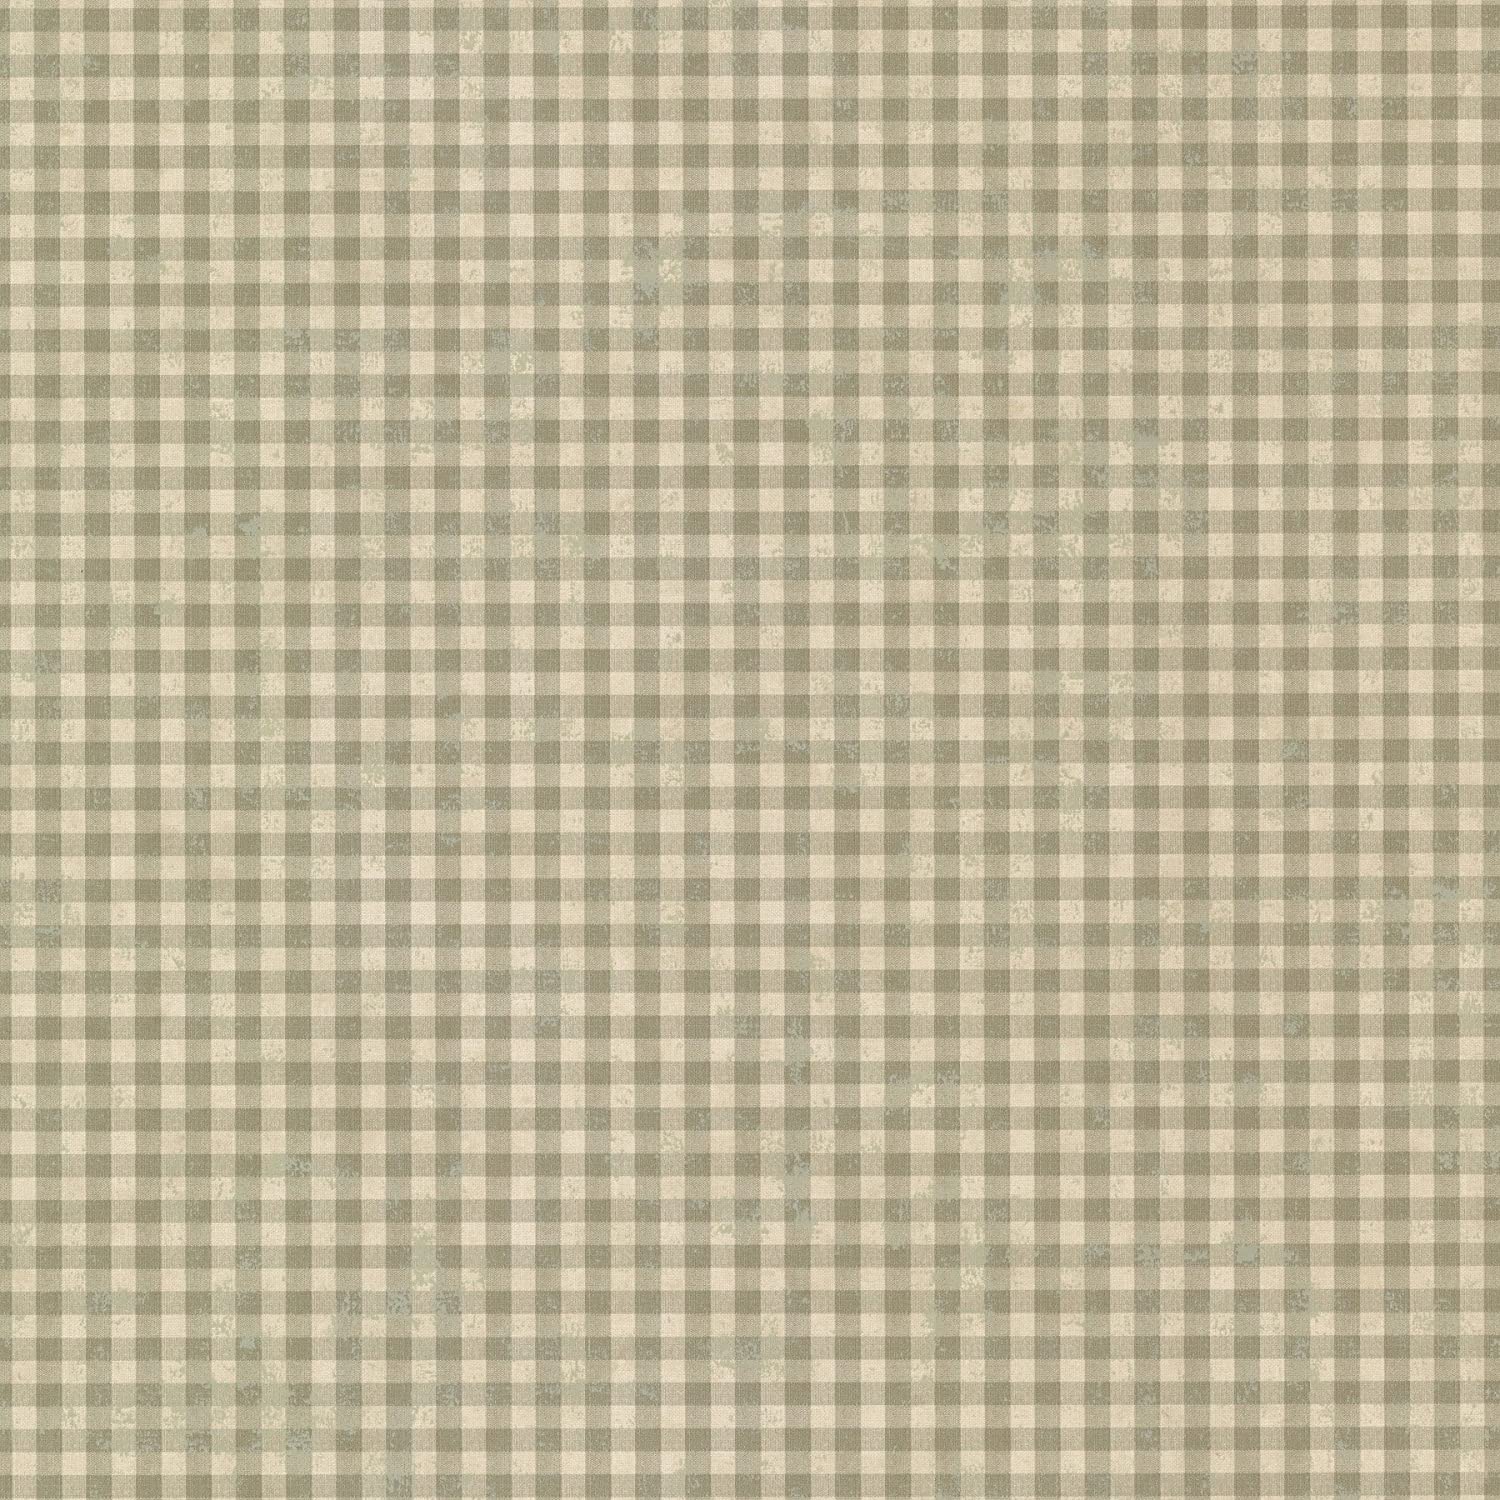 fabric wallpaper uk,beige,textile,linen,woven fabric,pattern